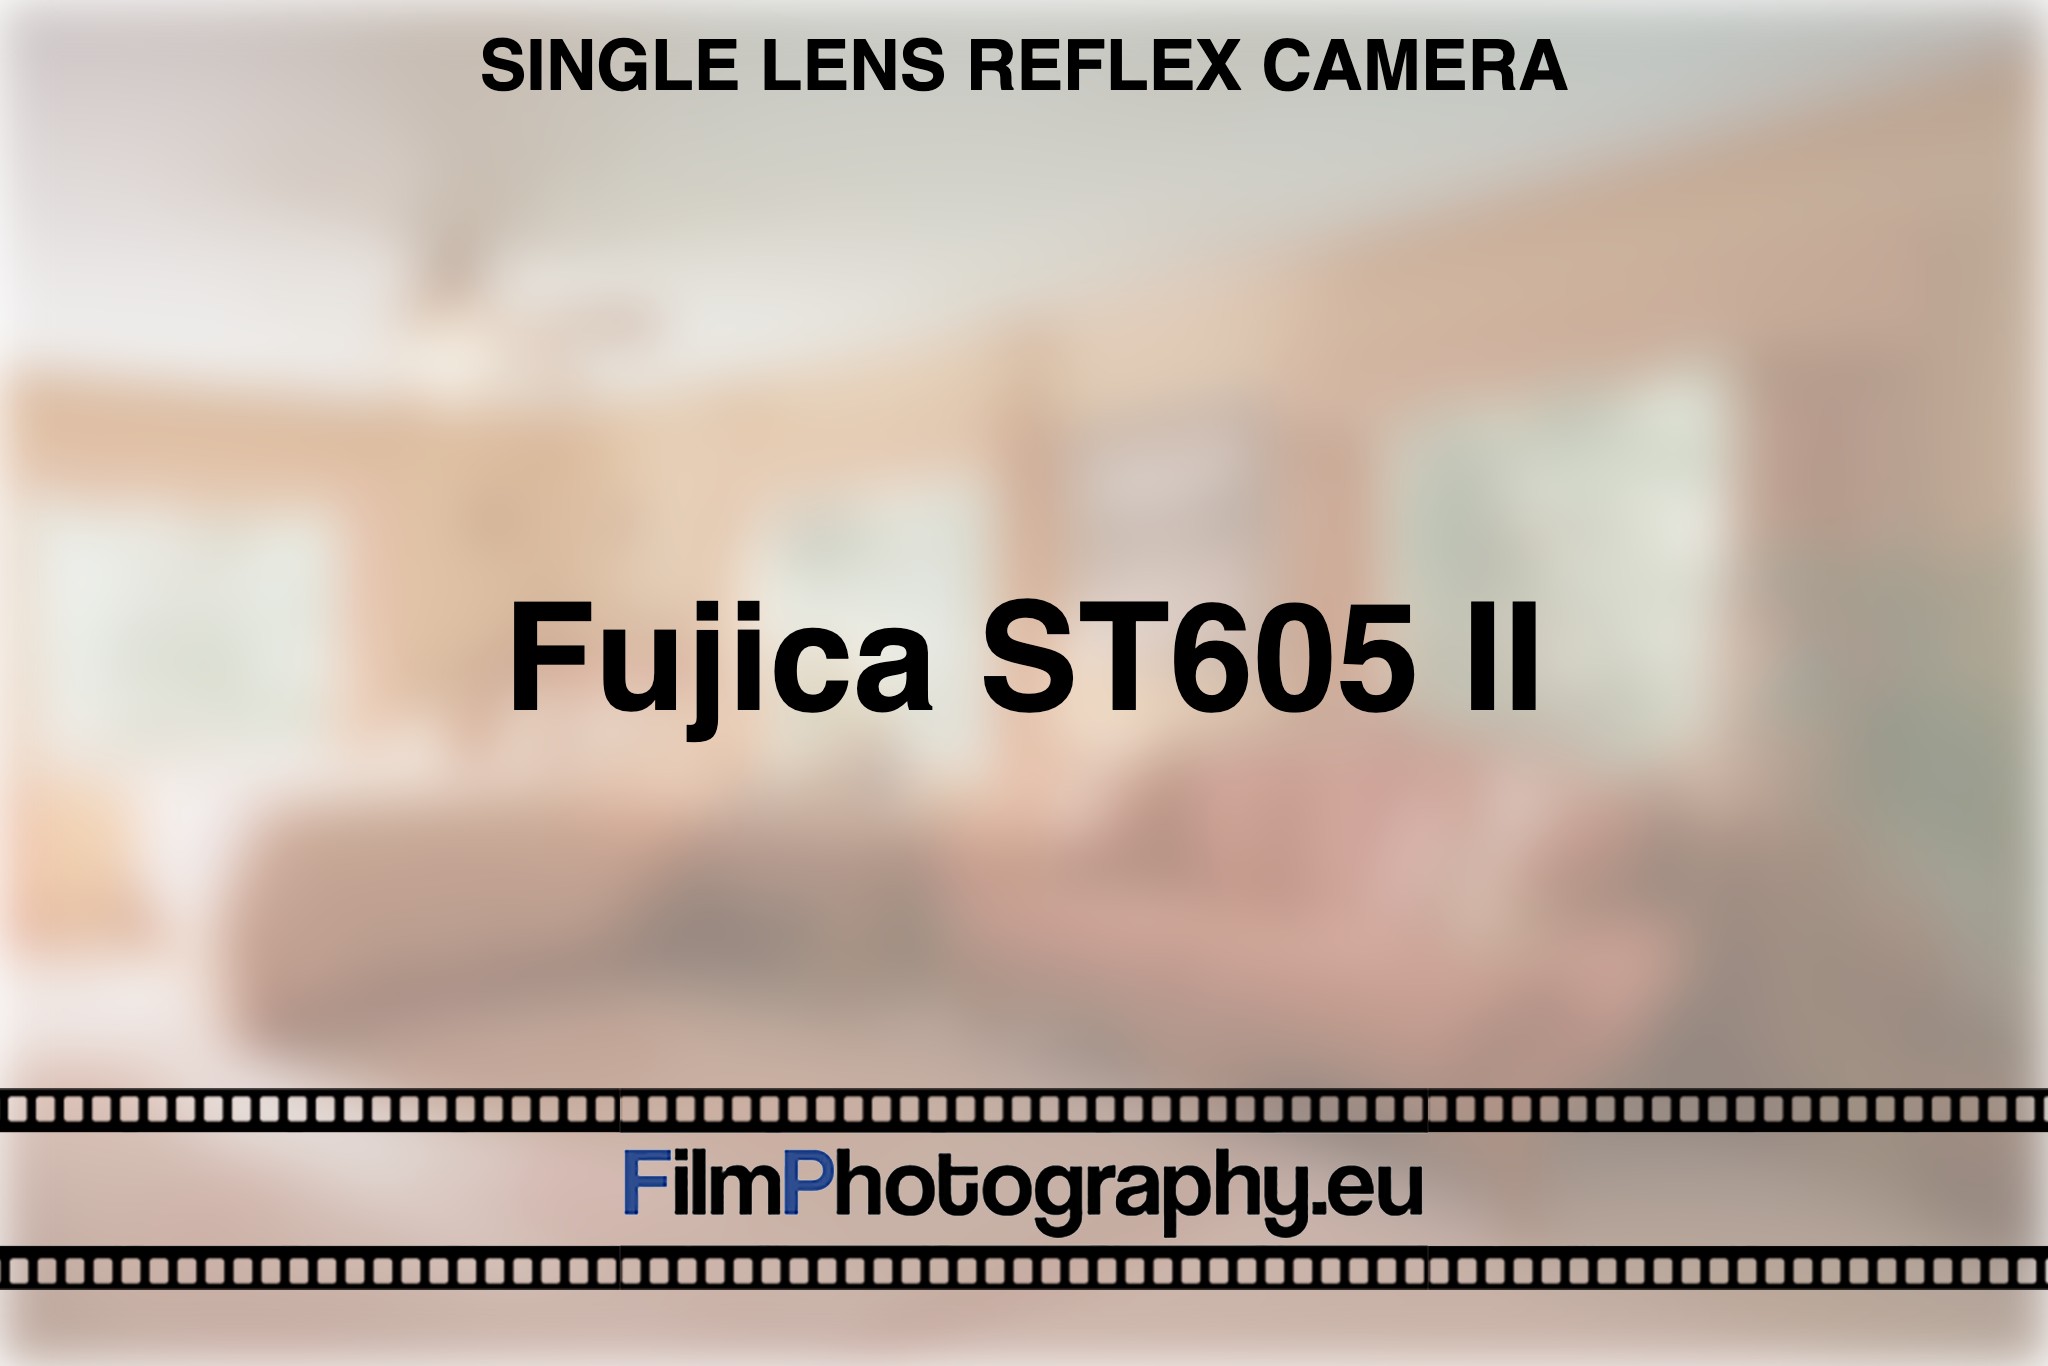 Fujica ST605 II | Guide for the single lens reflex camera